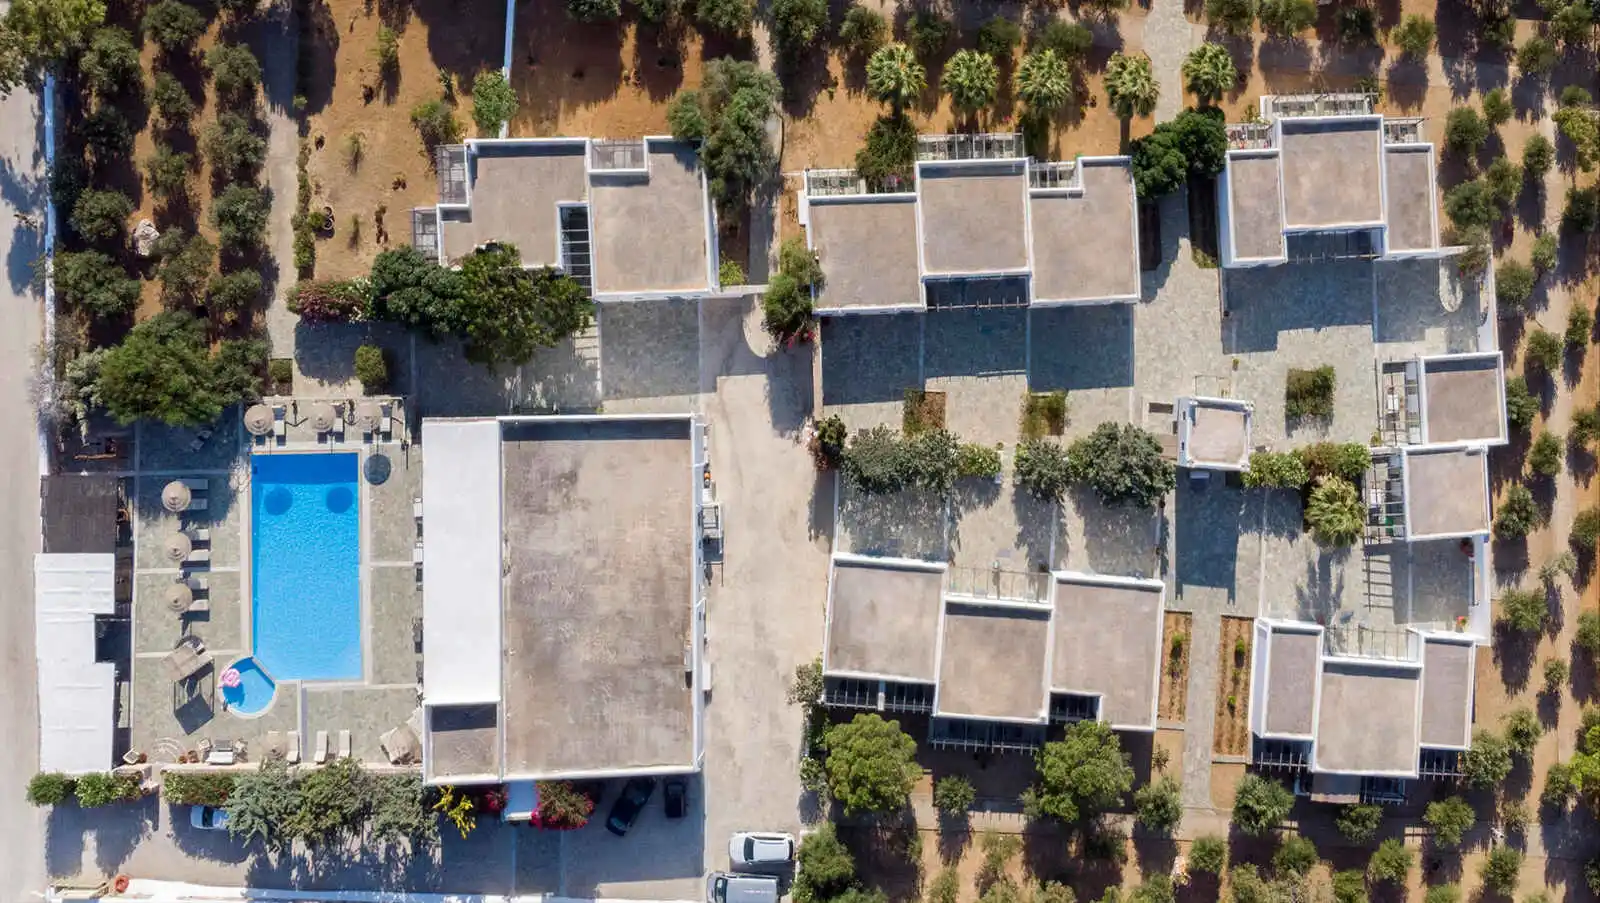 Vue aérienne de l'hôtel, hôtel Parosland, Aliki, Grèce